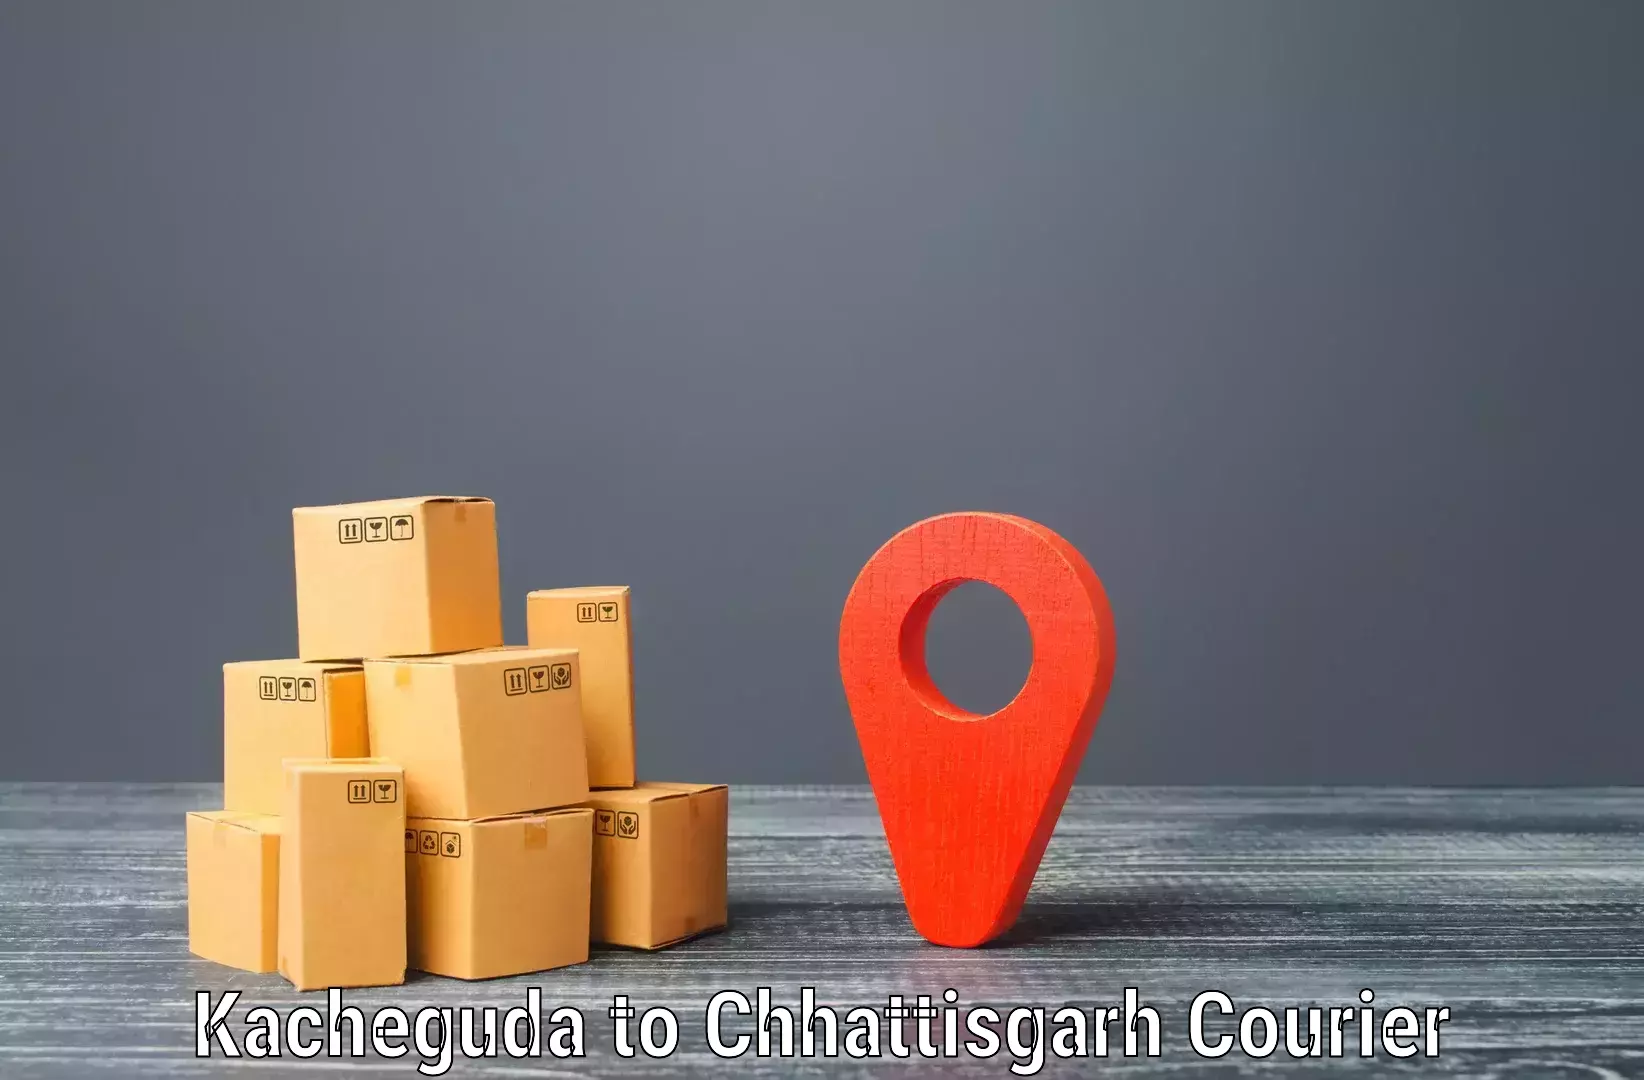 Efficient parcel service Kacheguda to Bijapur Chhattisgarh